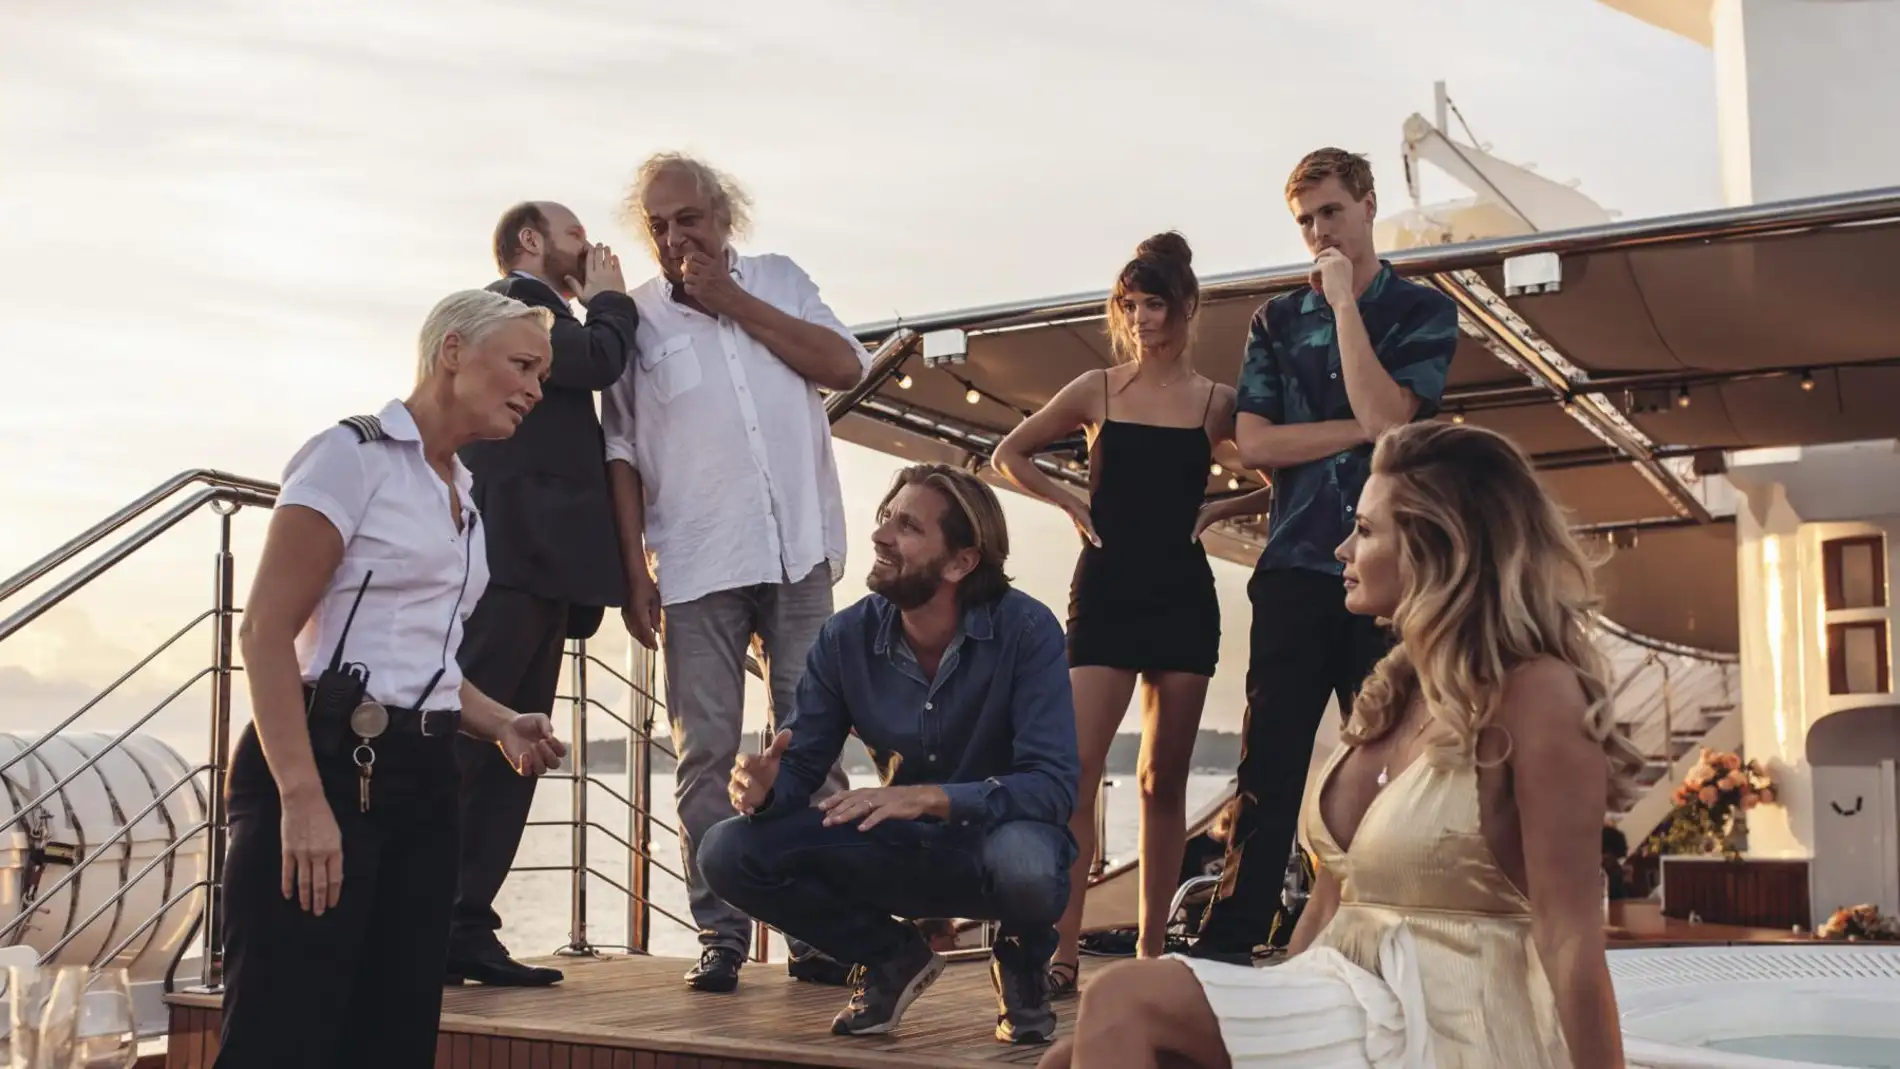 El director Ruben Östlund, rodeado por el equipo artístico de la película 'Triangle of sadness'